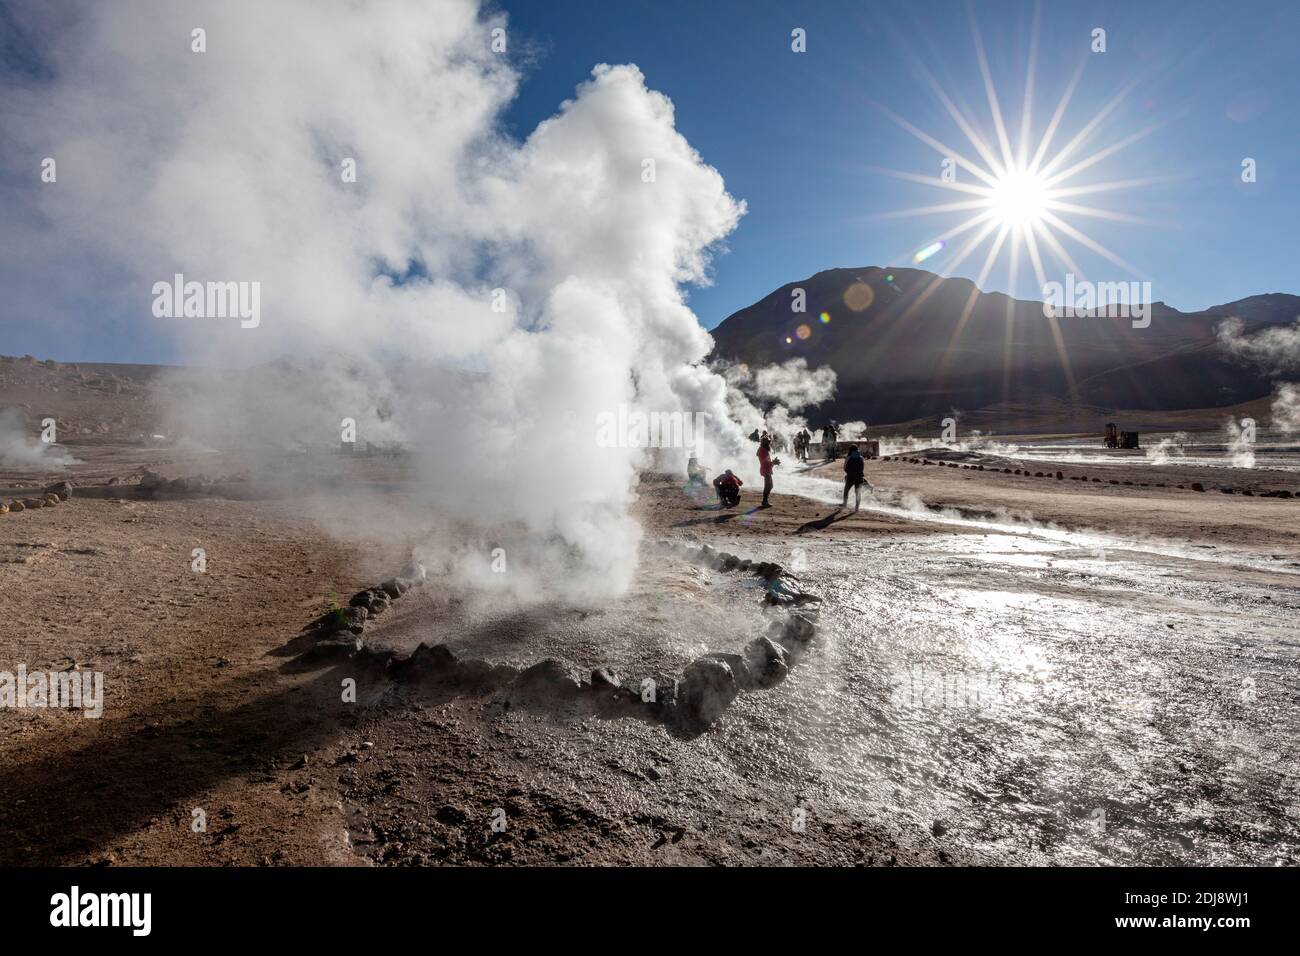 Turisti a Géiseres del Tatio, il terzo più grande campo geyser del mondo, Ande zona vulcanica centrale, Cile. Foto Stock